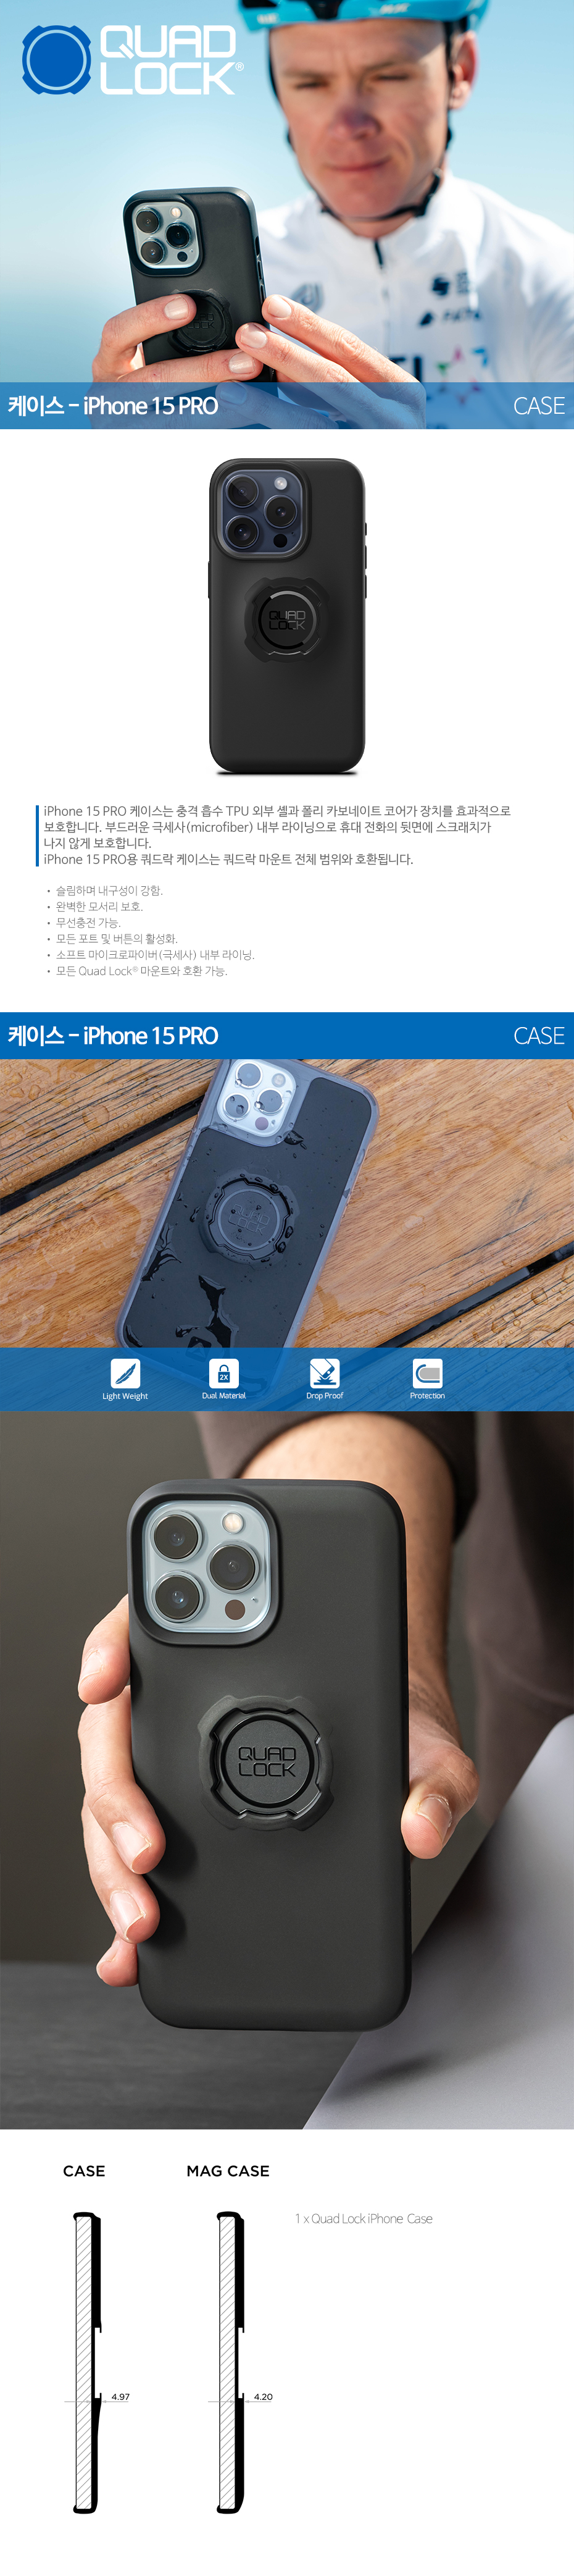 Quadlock Mag Smart Phone Case for iPhone 15 Pro Max